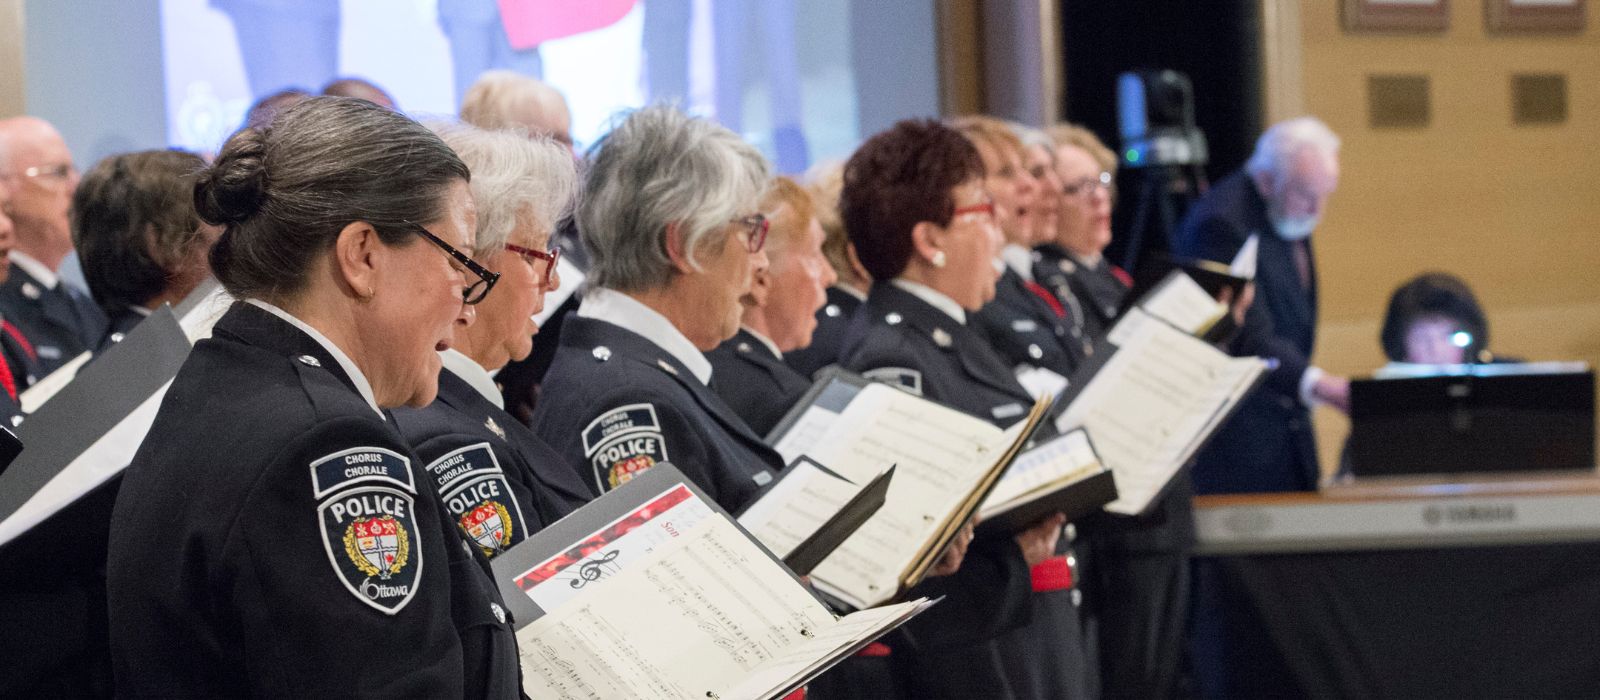 Les membres de la Chorale de la Police d'Ottawa chantent.